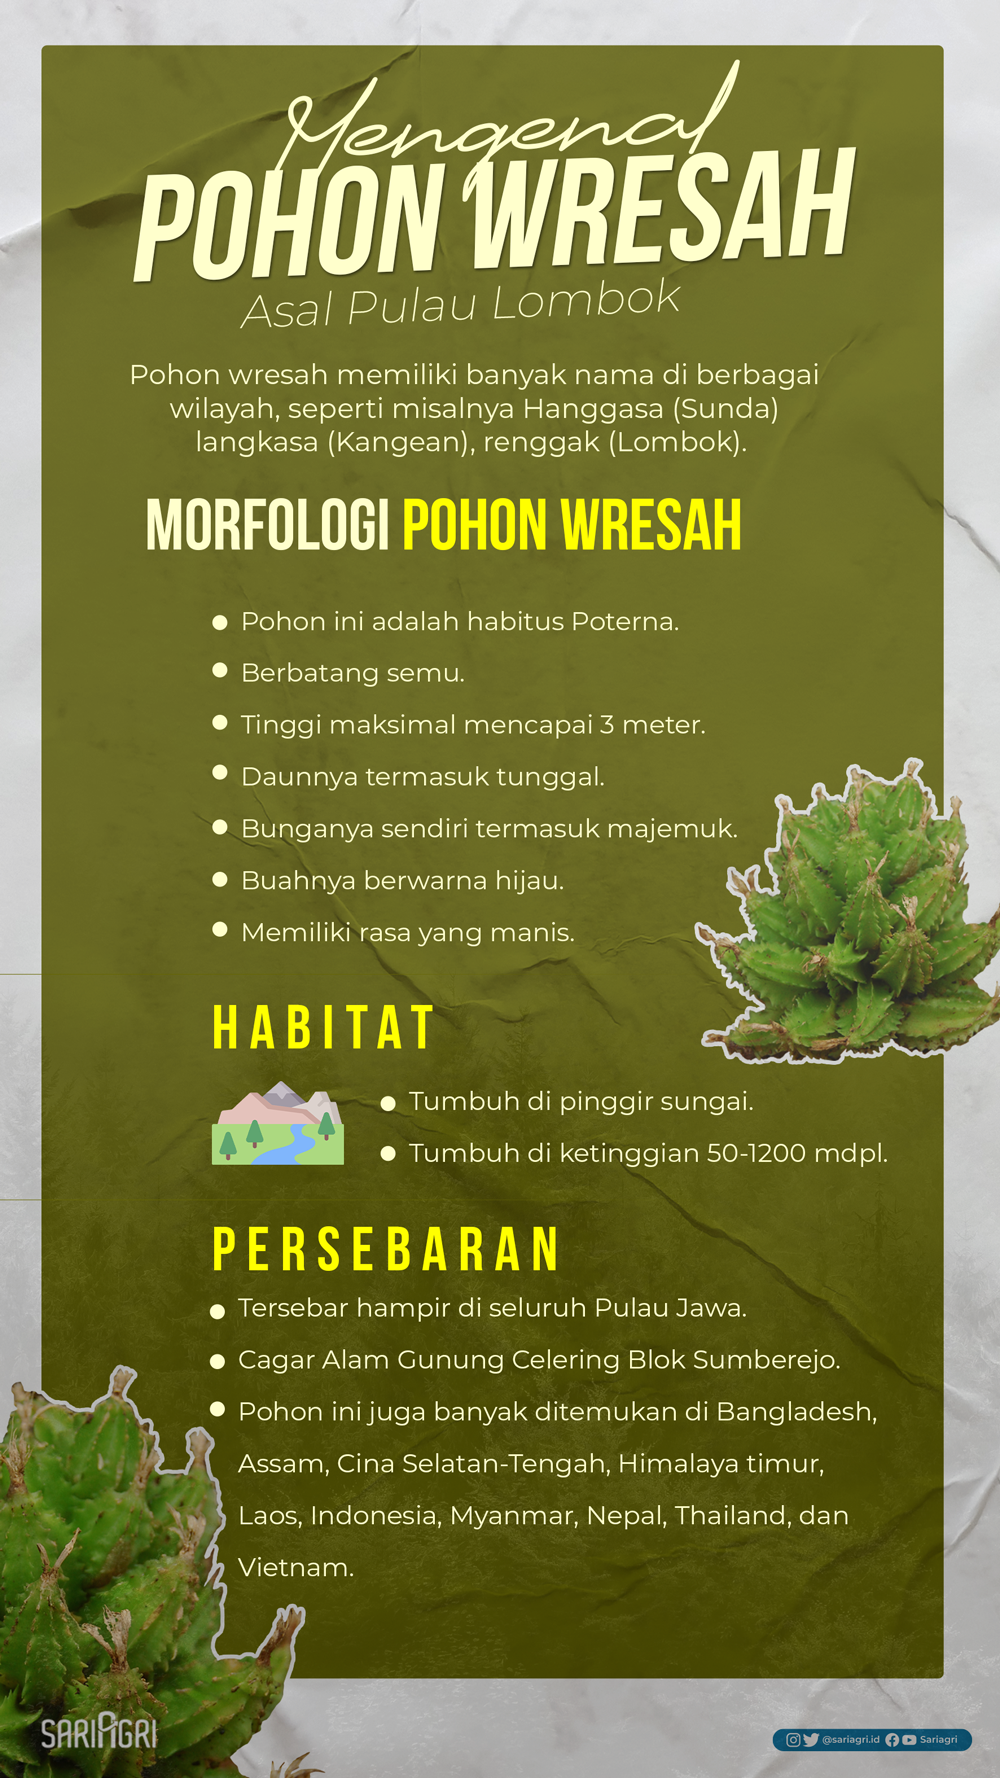 Mengenal Pohon Wresah Asal Pulau Lombok. (Sariagri/Faisal)